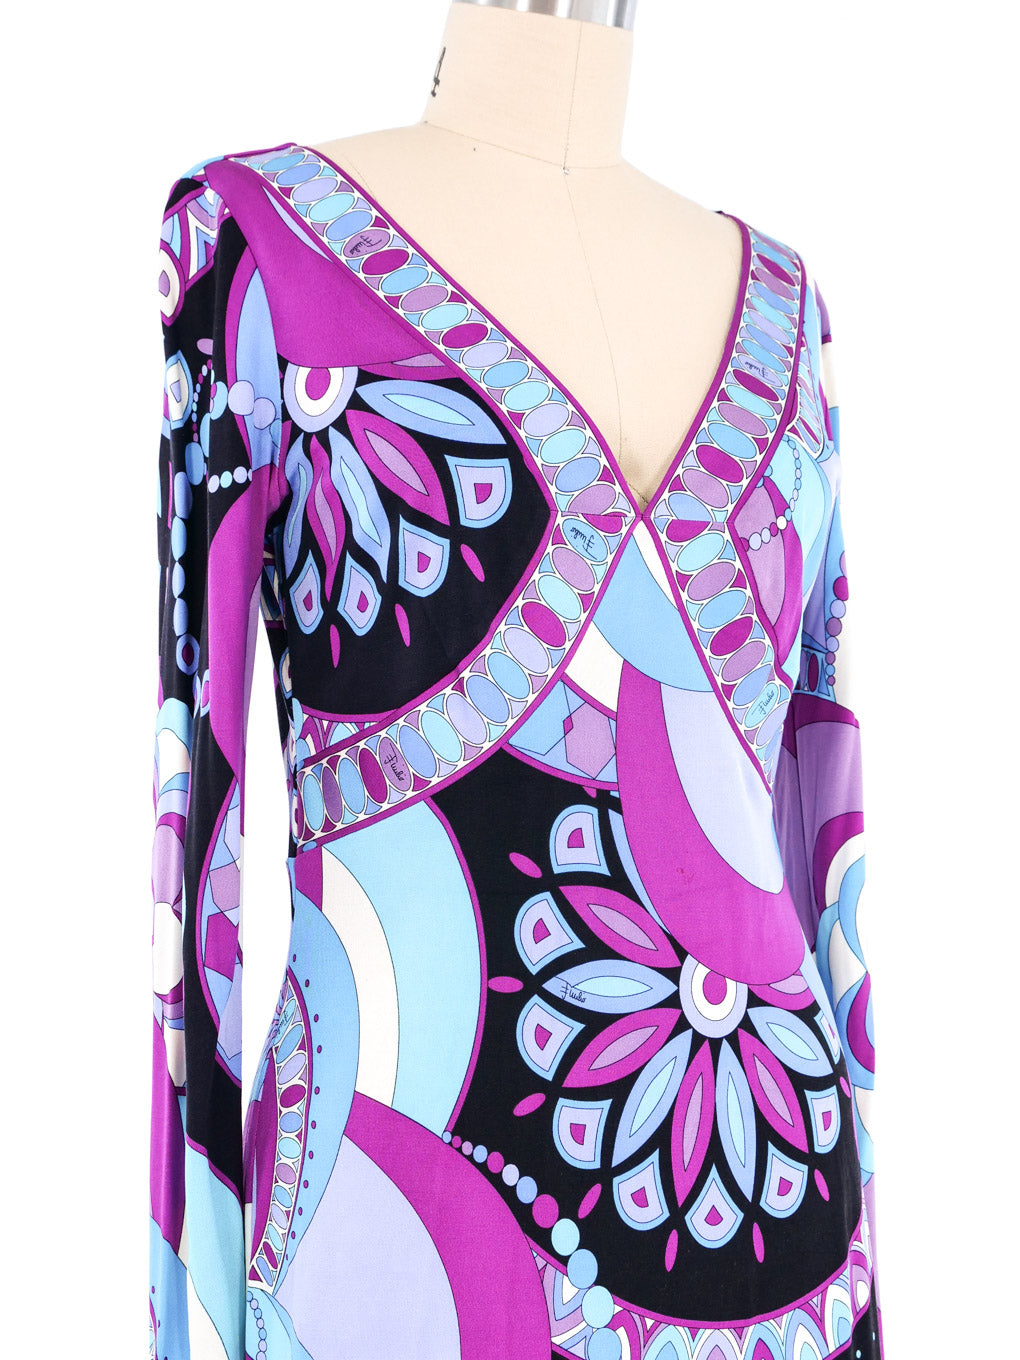 Empress Vintage Emilio Pucci Pink & Purple Floral Print Dress